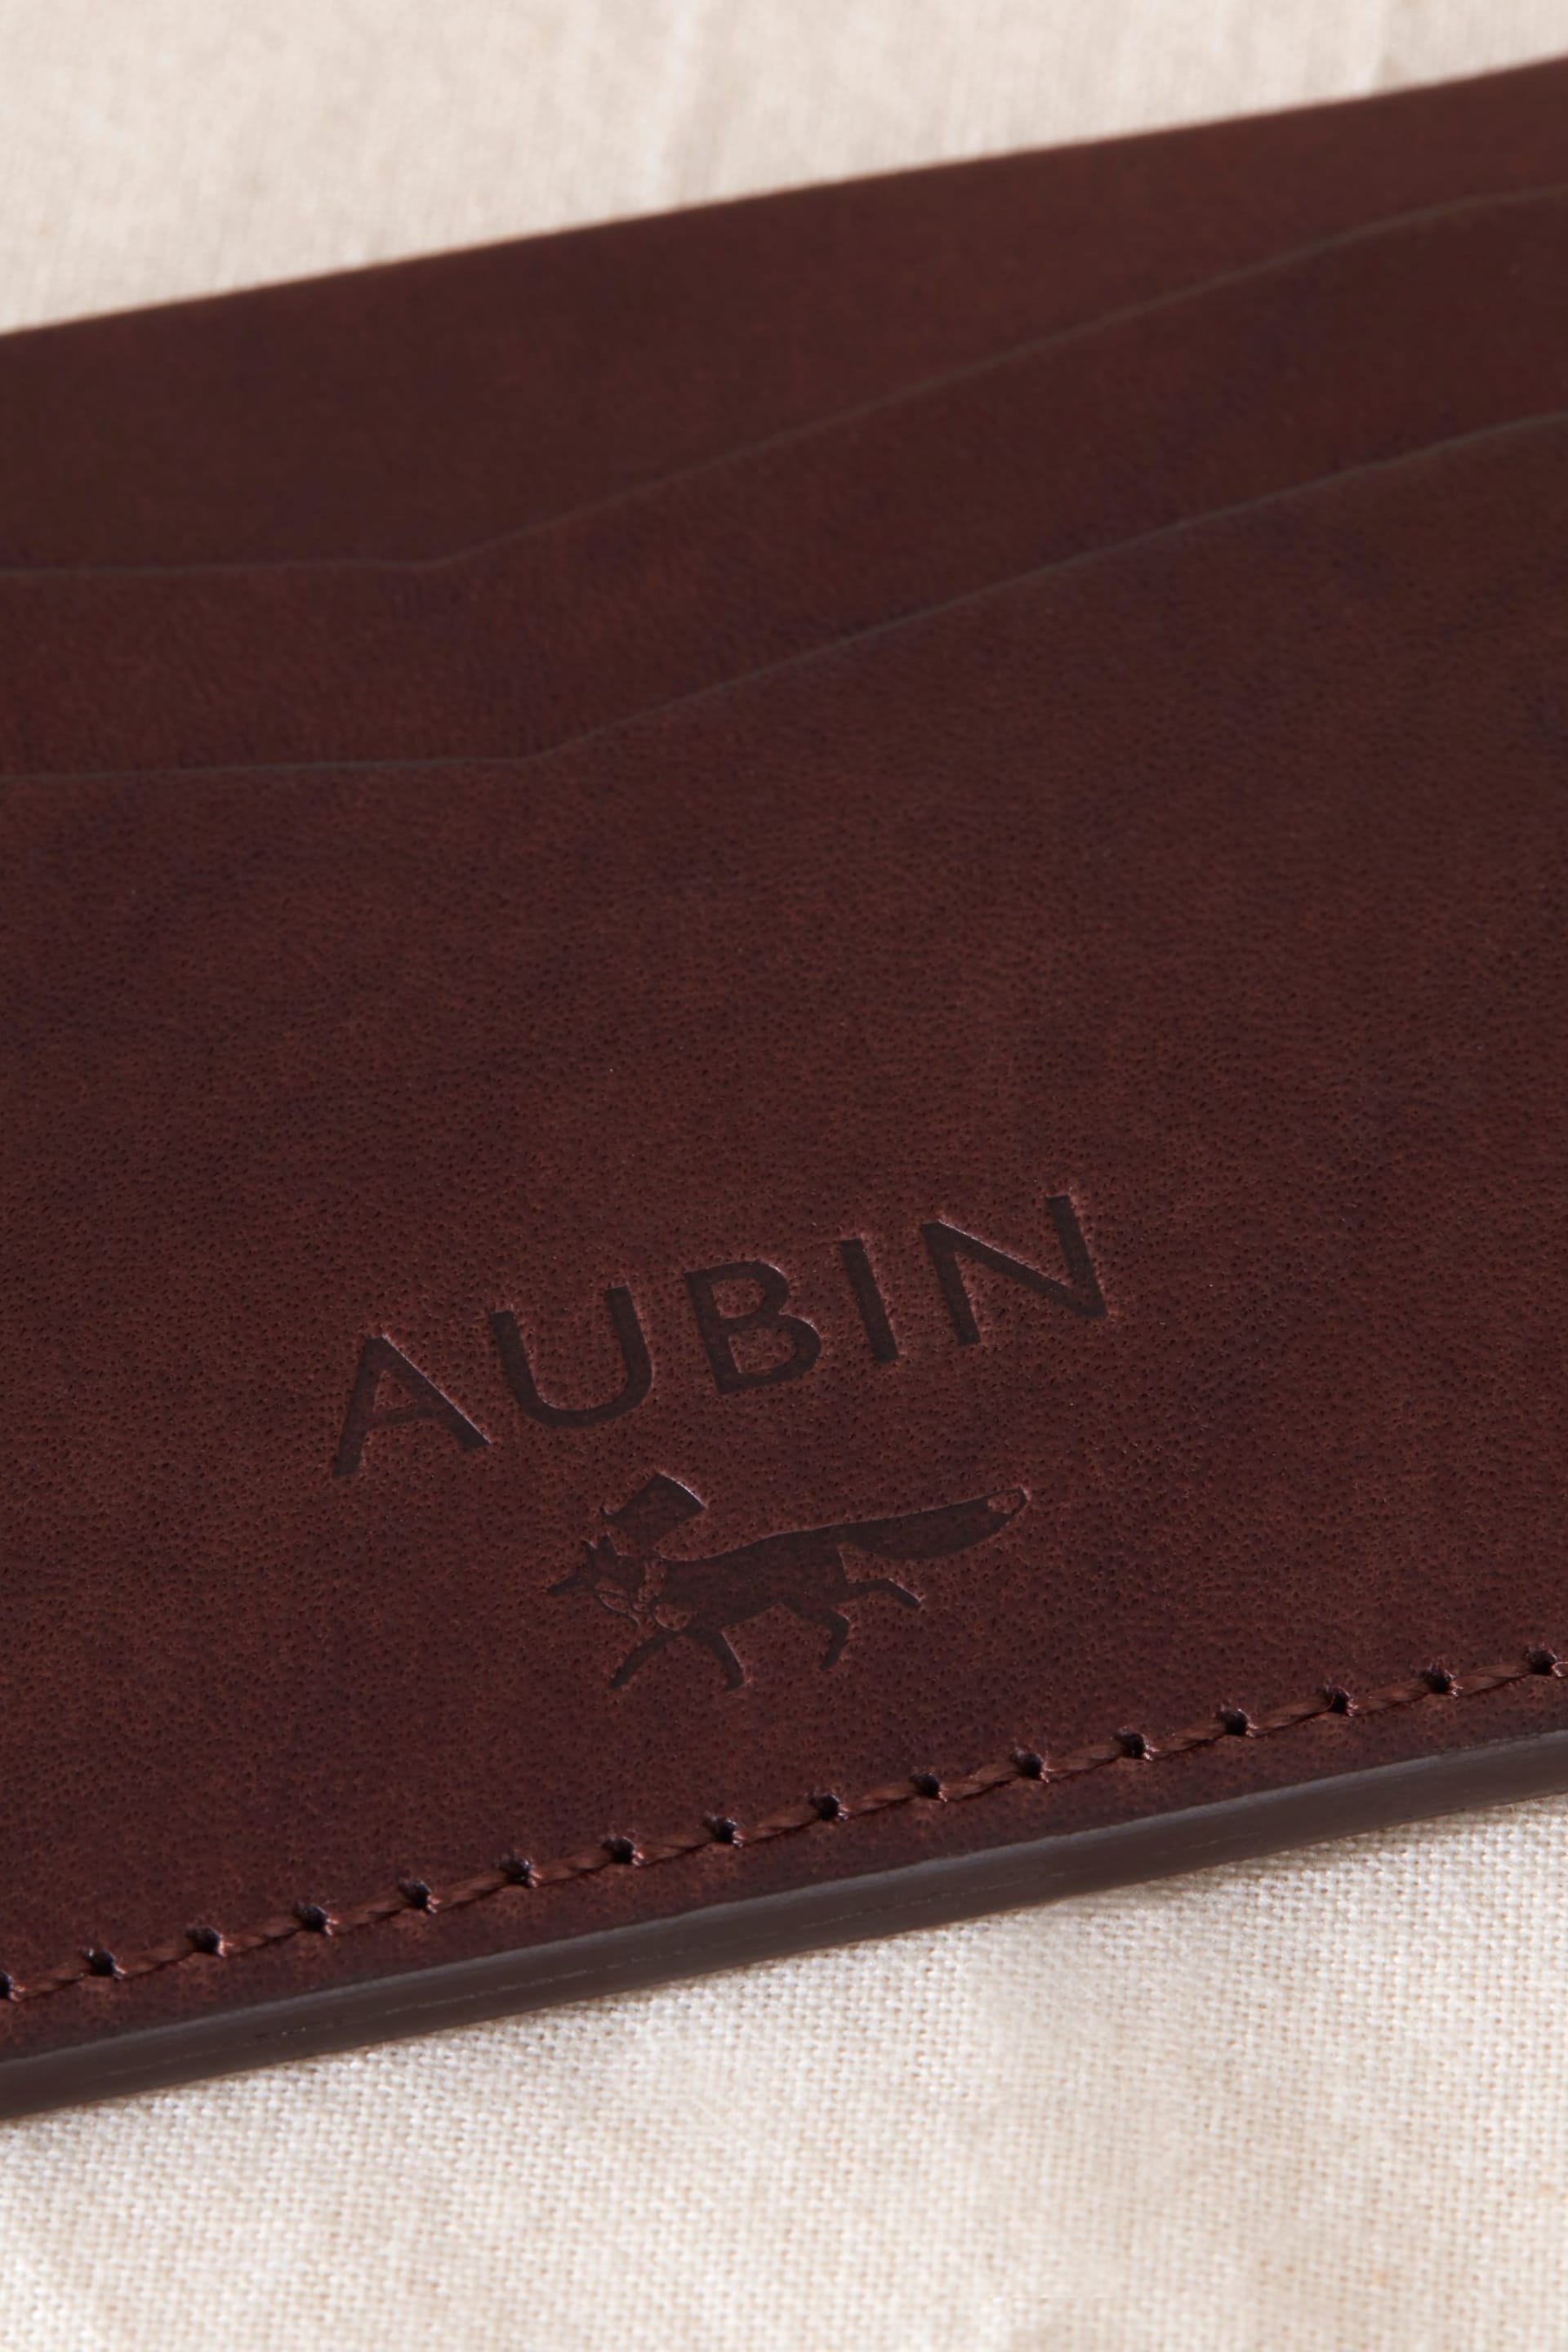 Aubin Stirling Leather Card Holder - Image 3 of 3